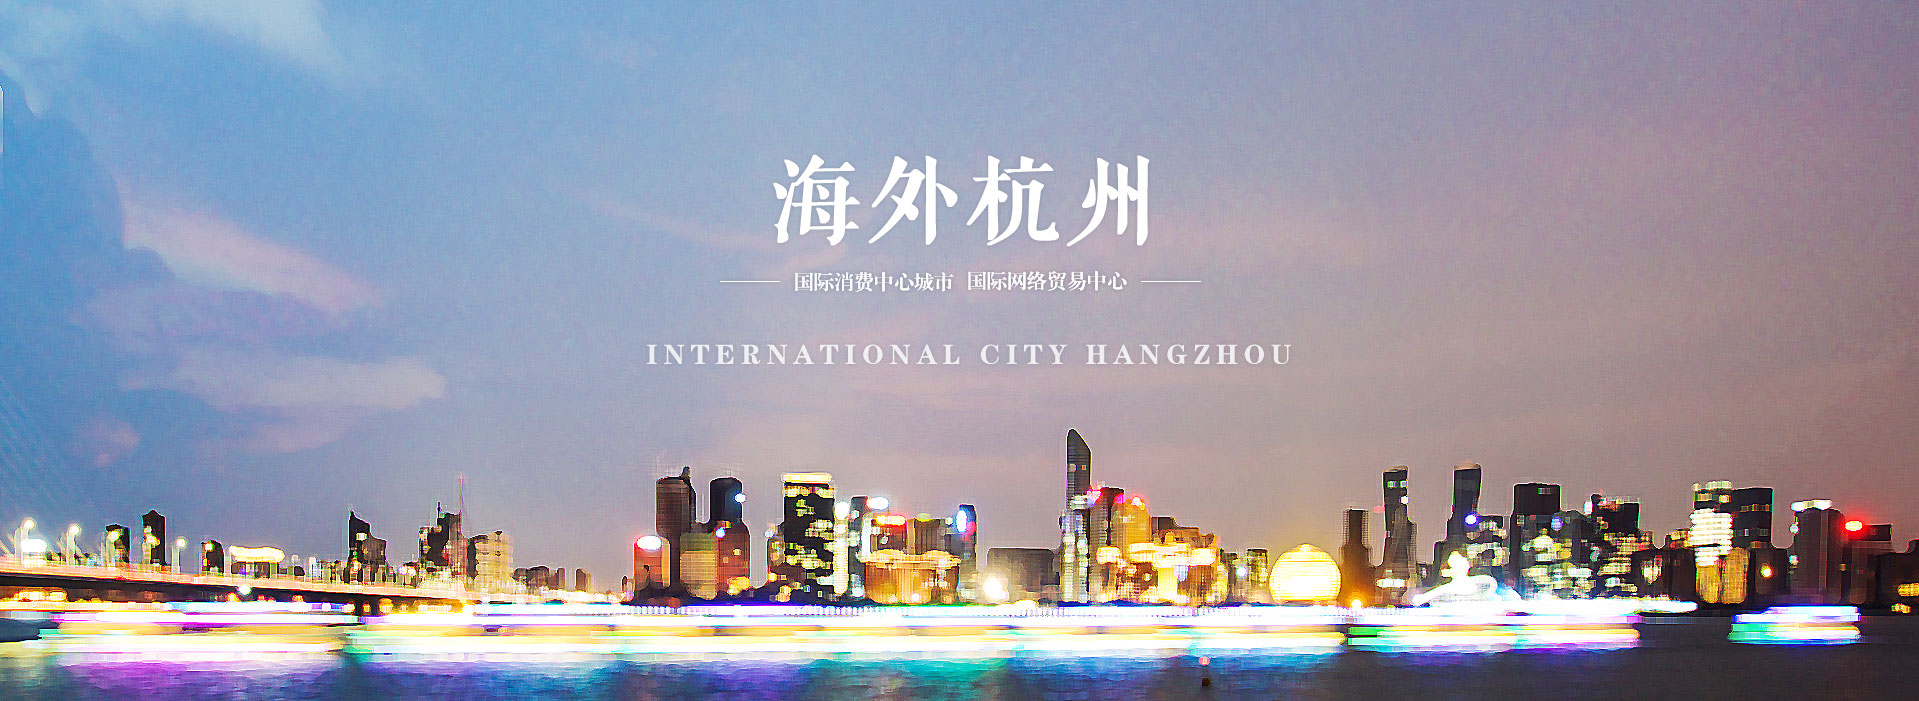 海外杭州-国际消费中心城市 国际网络贸易中心